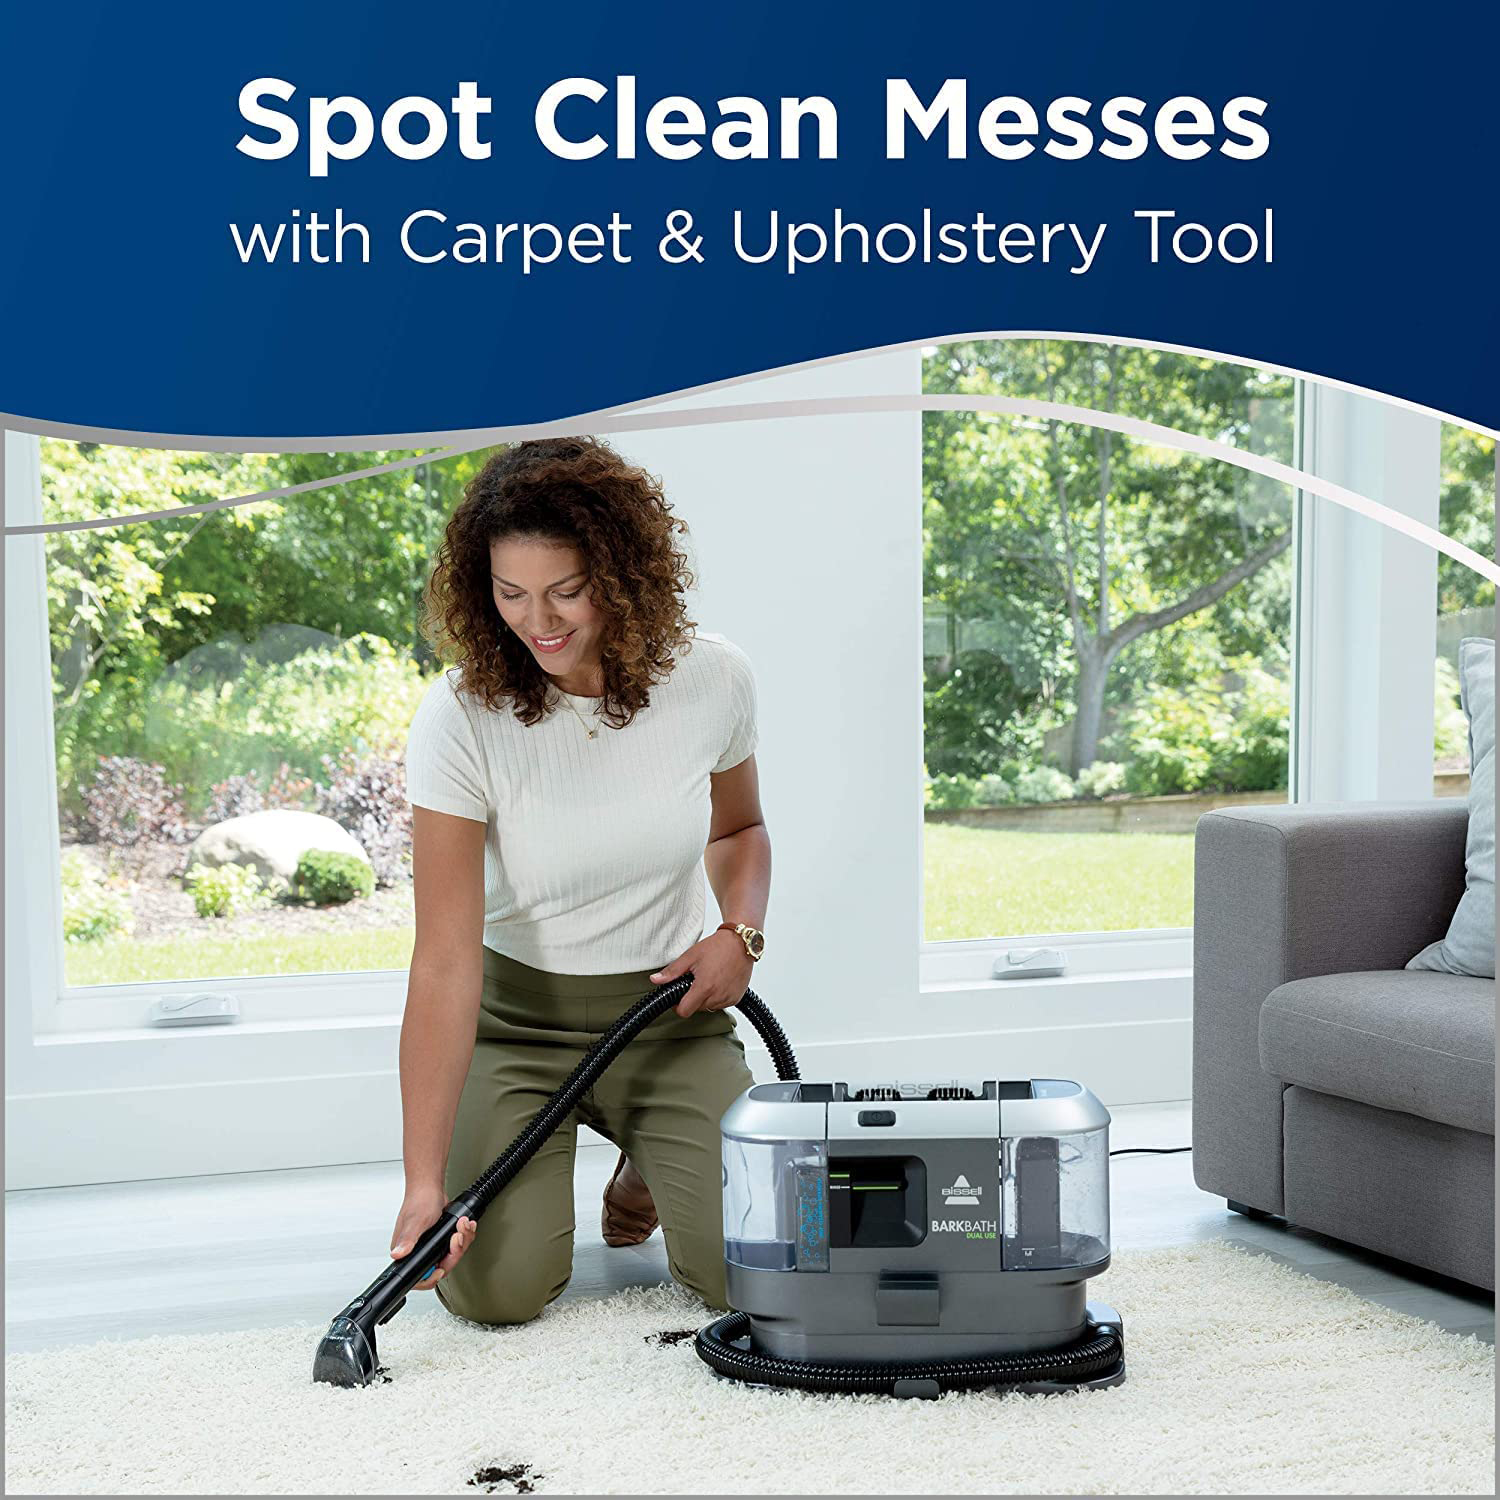 همچنین می تواند برای تمیز کردن آشفتگی هایی که سگ یا سایر اعضای خانواده شما ممکن است روی فرش و اثاثه یا لوازم داخلی منزل بگذارند، استفاده شود.